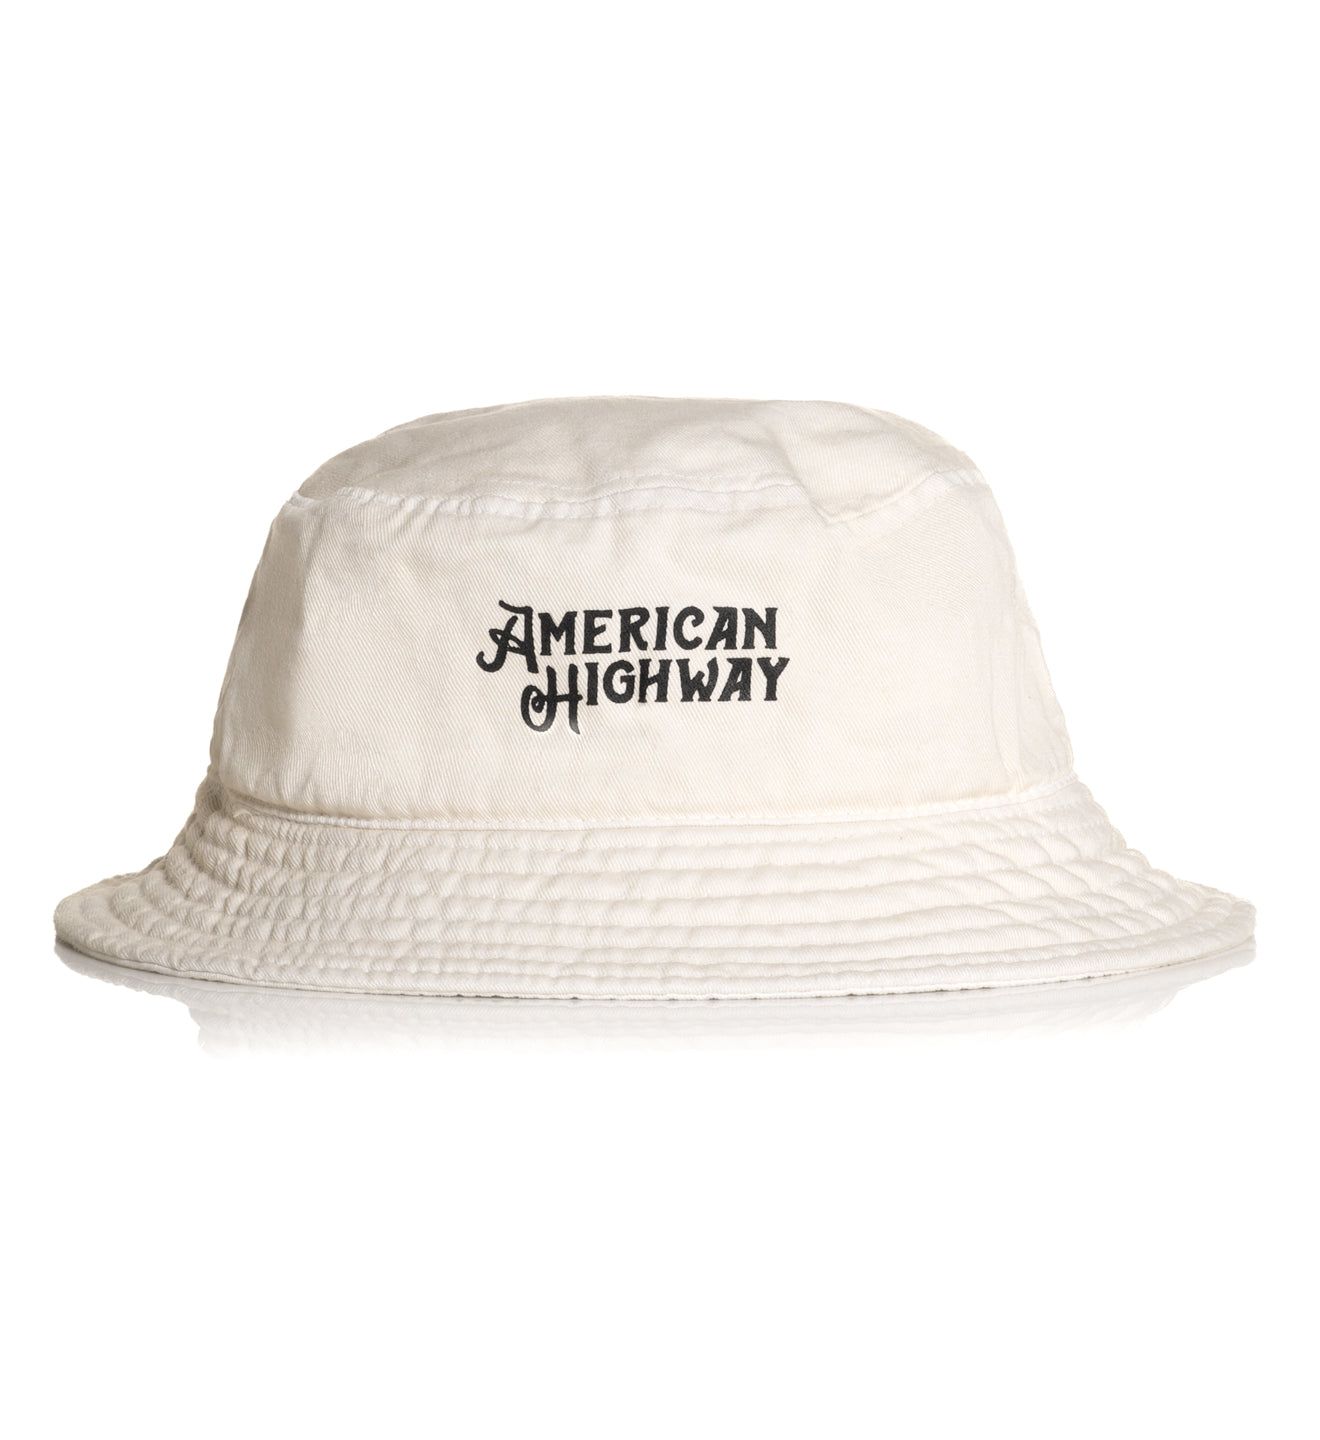 Highway Bucket Hat - American Highway